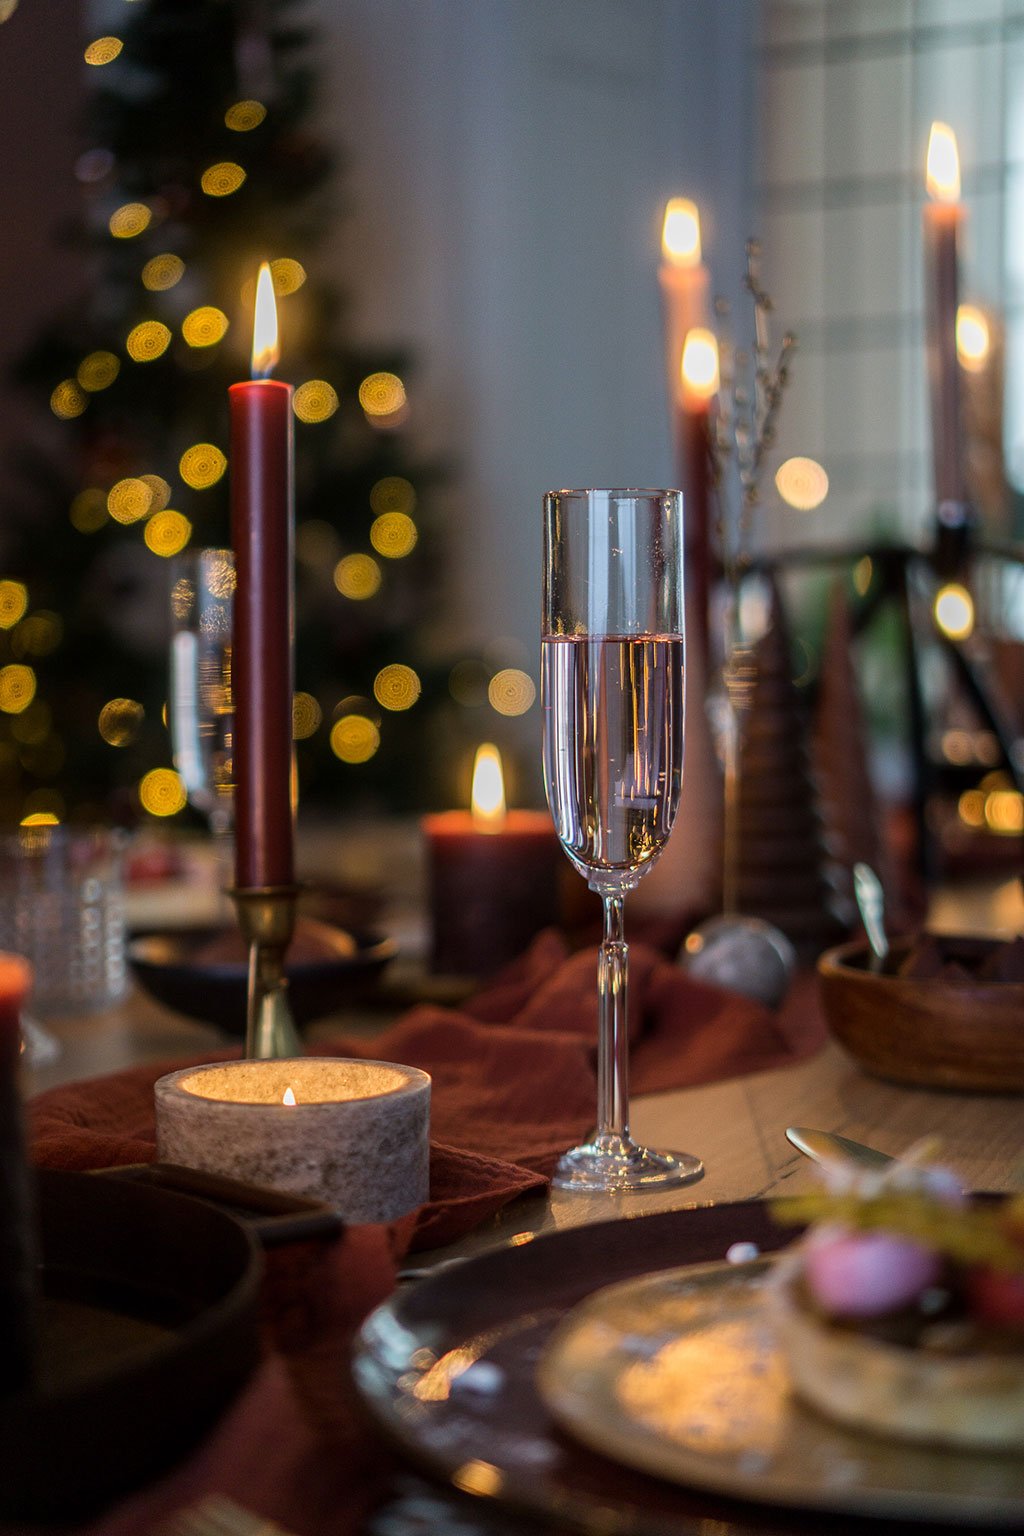 Kersttrends 2020 | Chefkok aan huis met de kerst | Culinaire kerst thuis | Stek Magazine